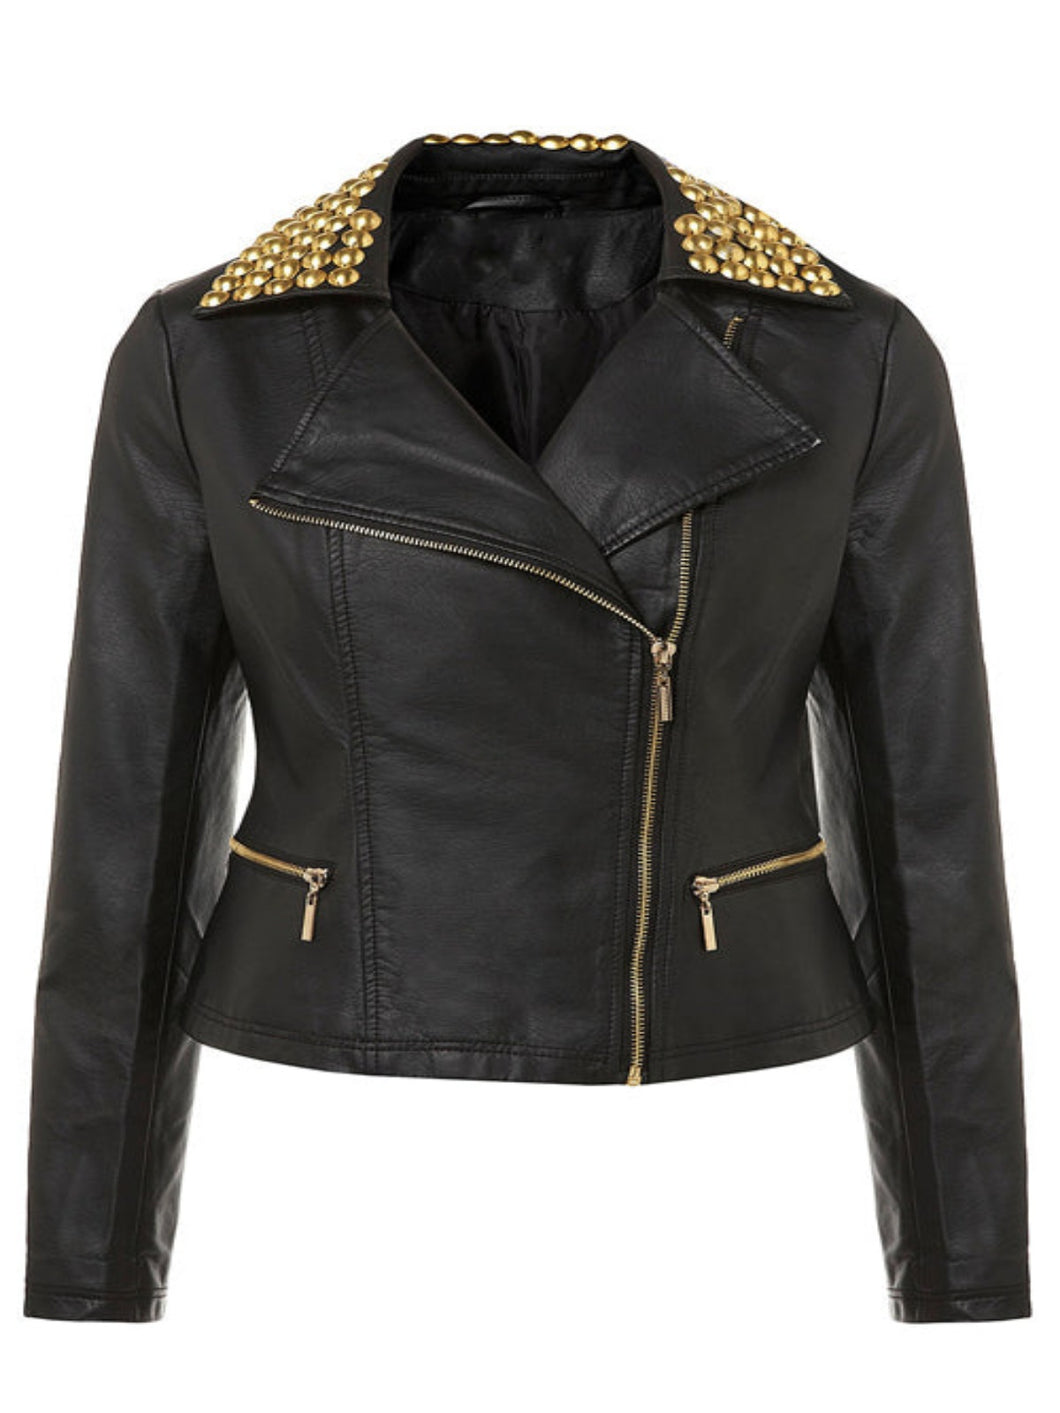 Womens Stylish Studded Black Leather Moto Jacket